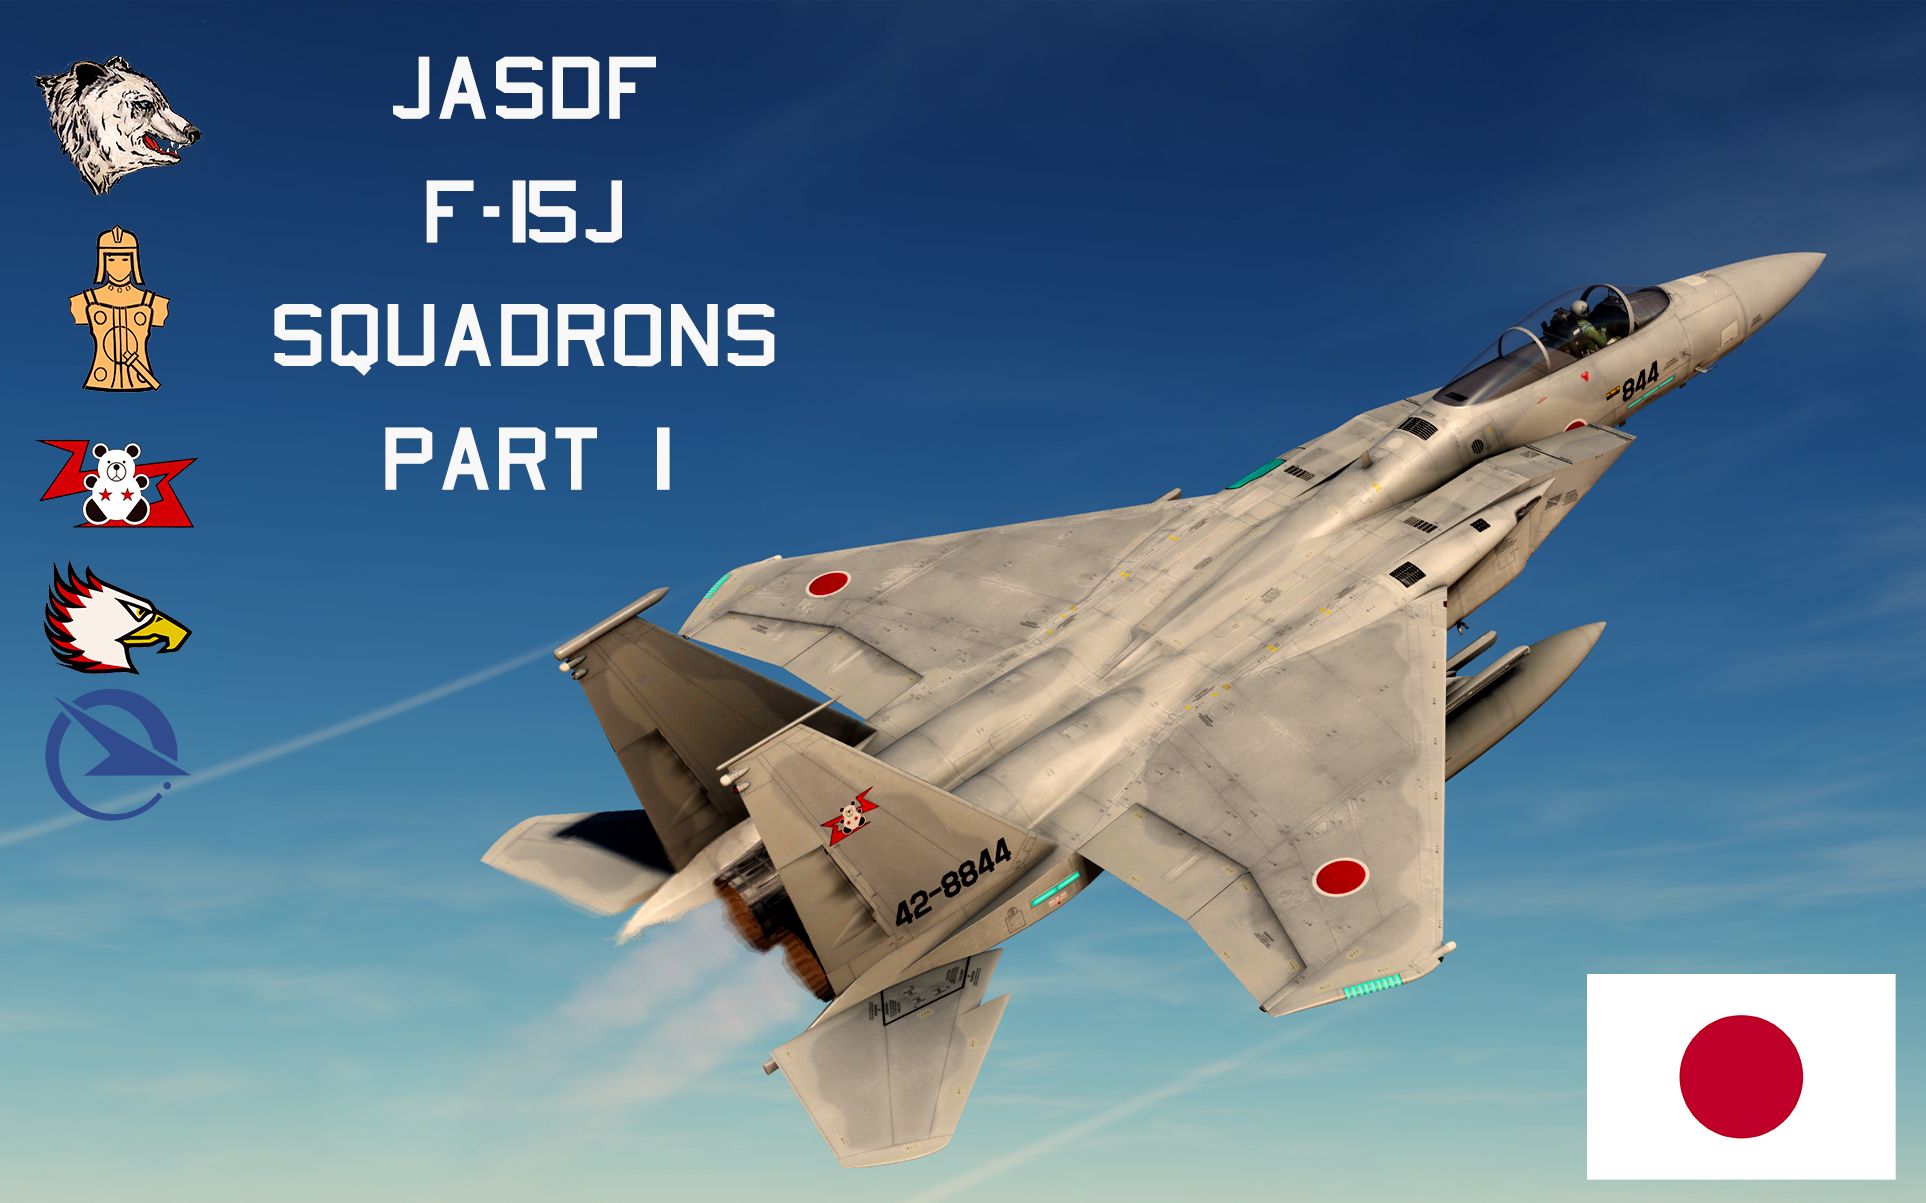 JASDF F-15J Squadrons Part 1